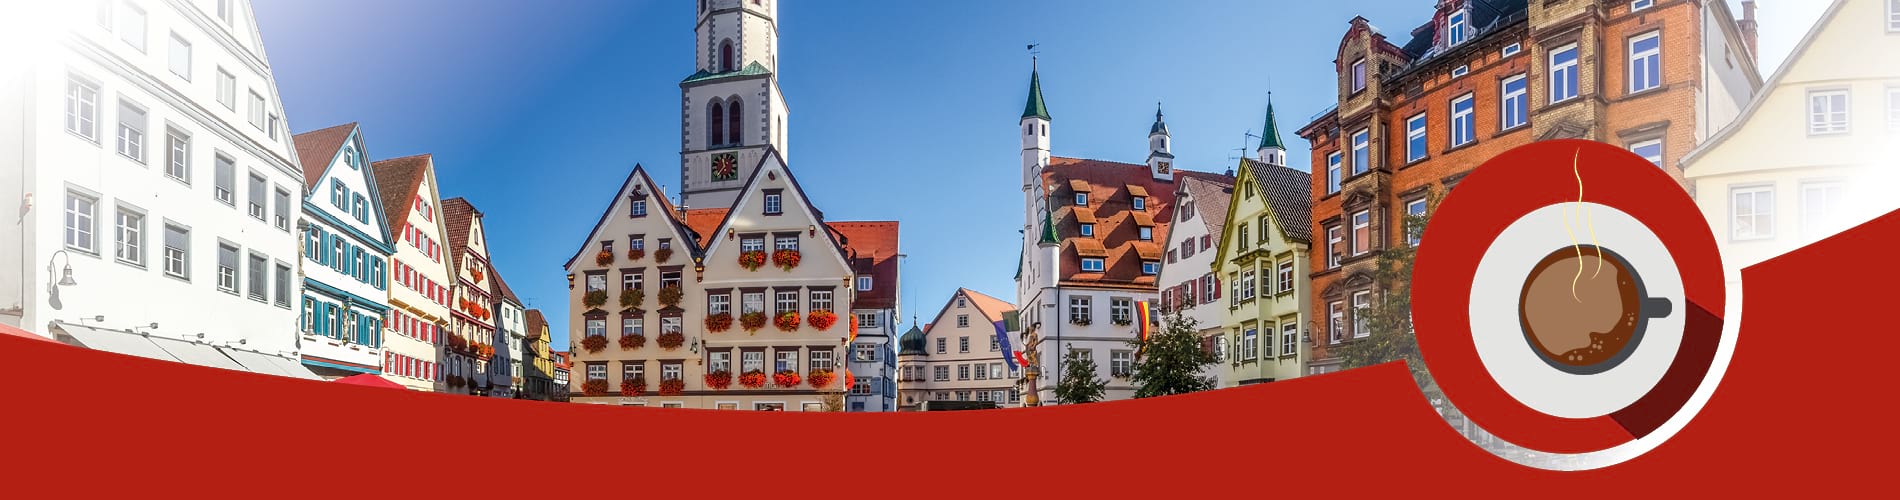 Das Bild zeigt die historische Altstadt von Biberach. Eine gezeichnete Kaffeetasse assoziiert das Thema "Newsletter am Morgen" der Schwäbischen Zeitung.